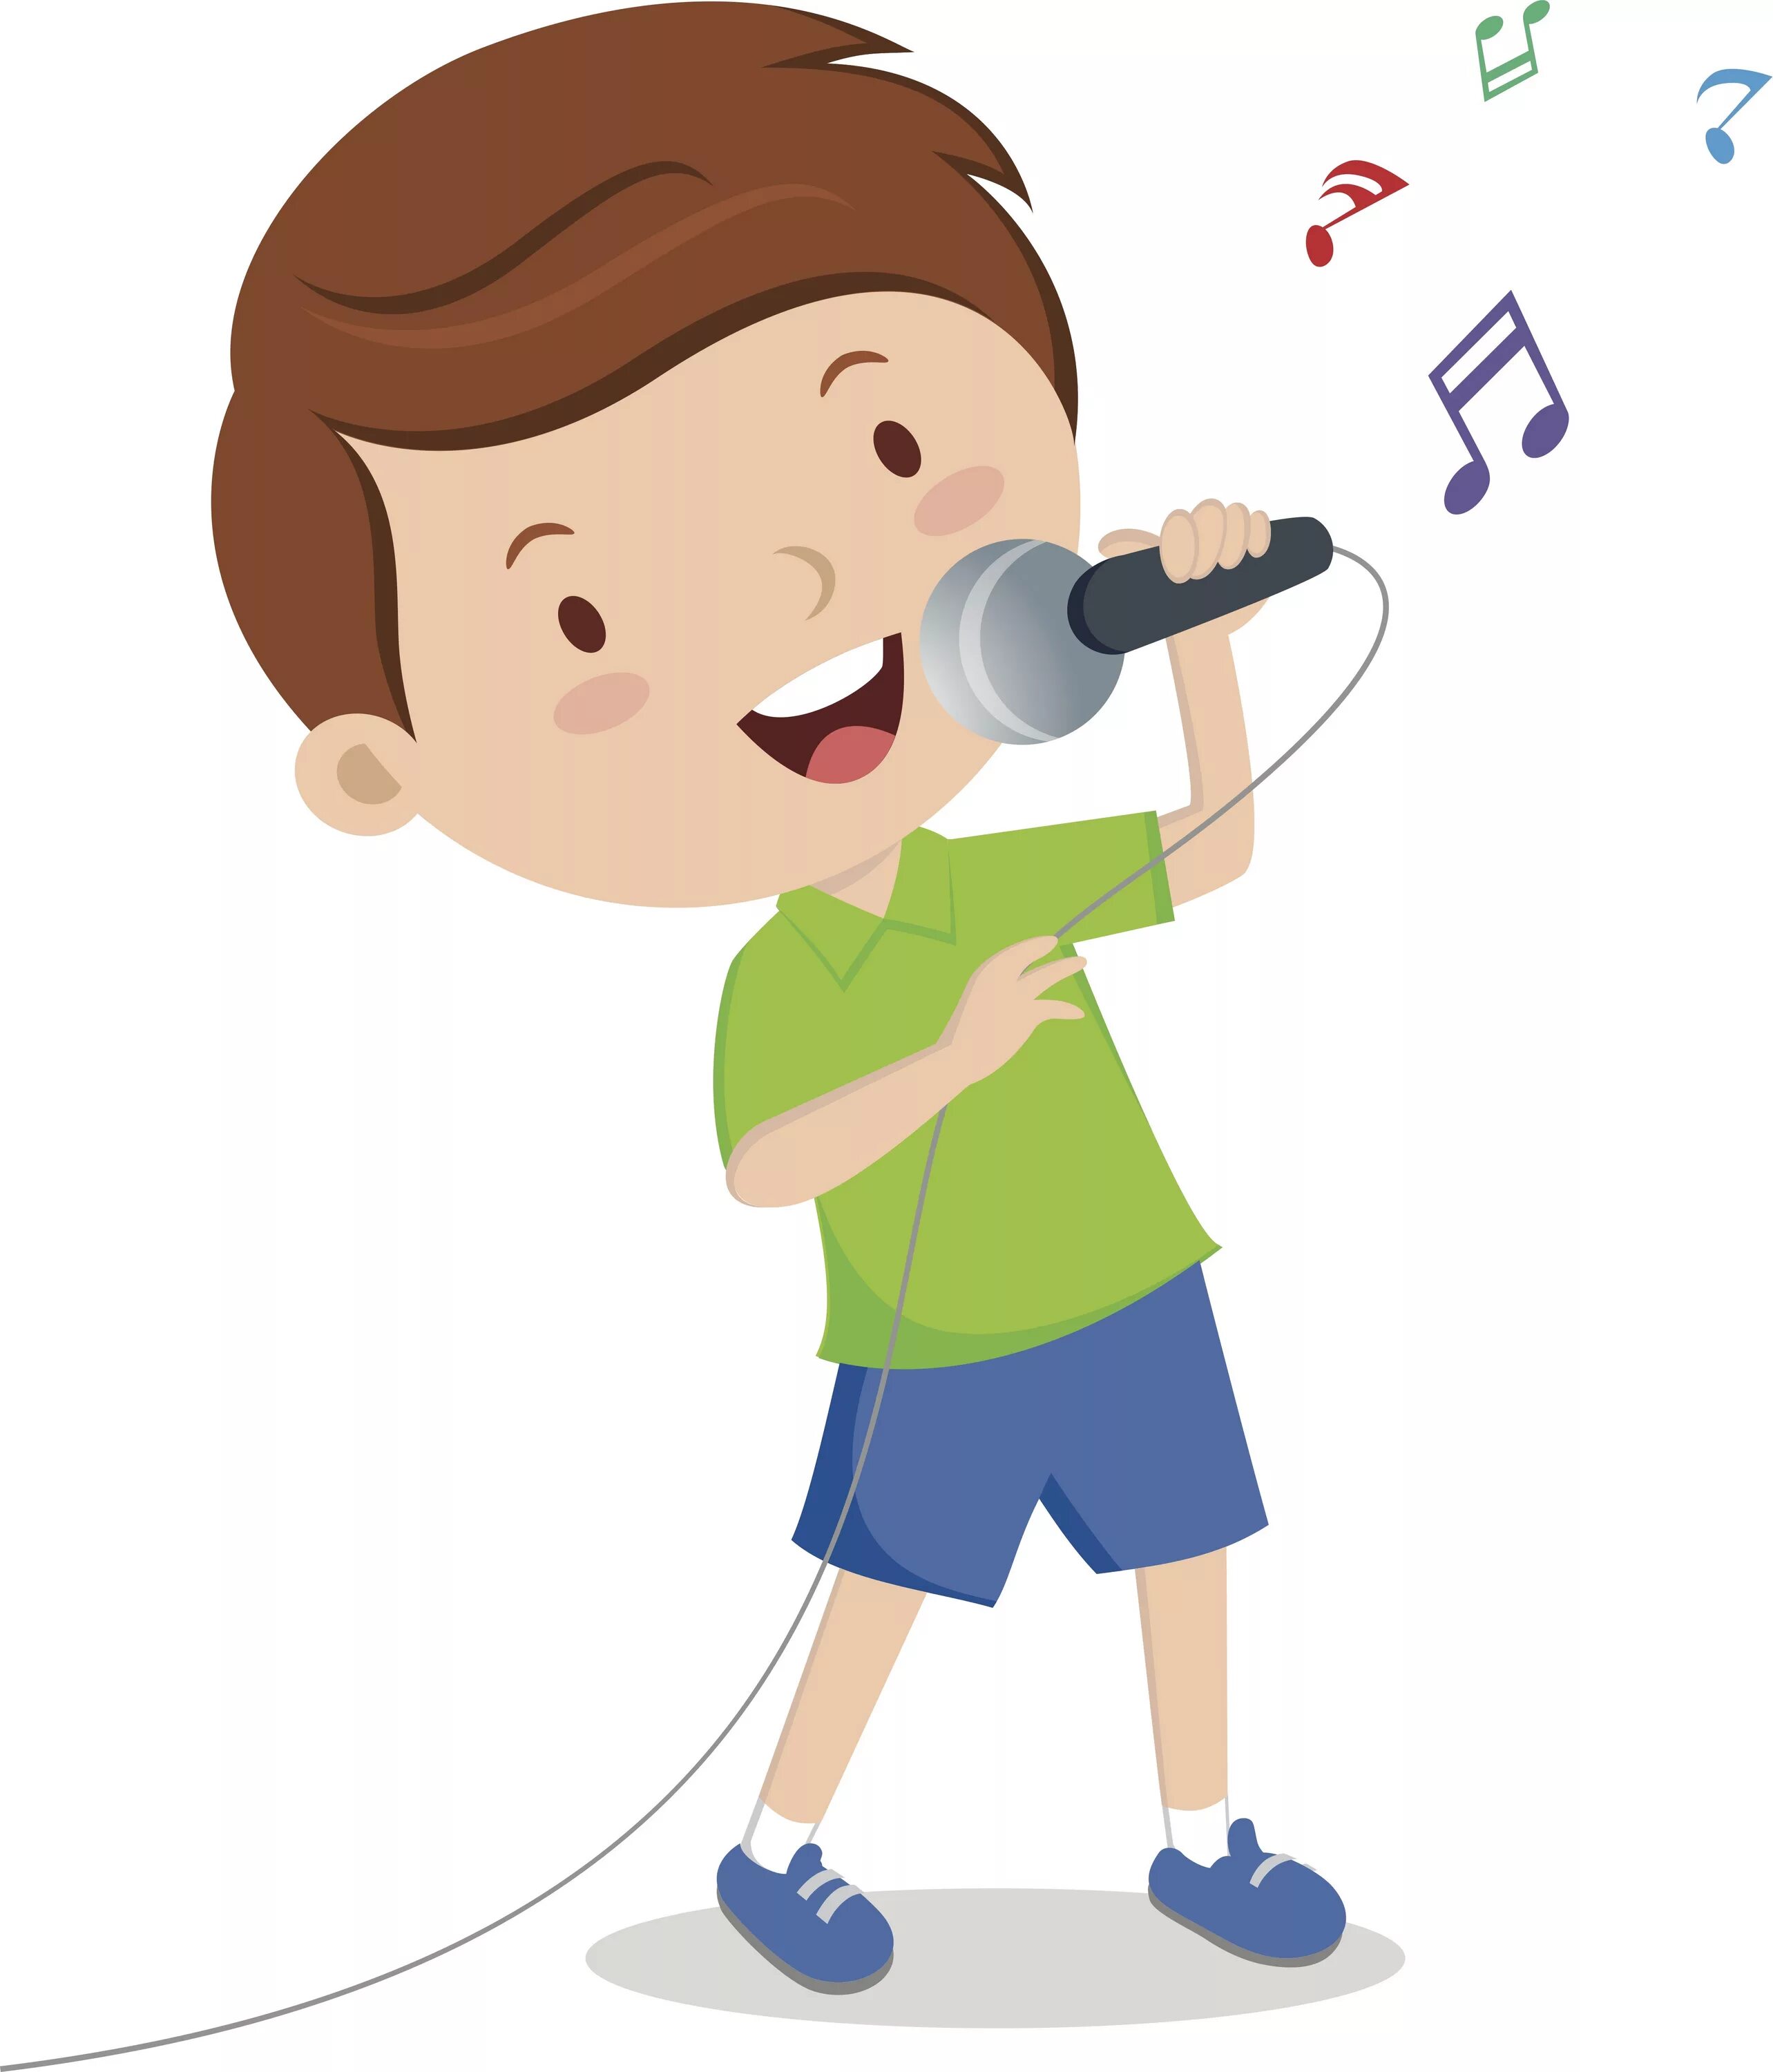 Пою поют клюю. Дети поют в микрофон. Ребенок с микрофоном. Мальчик с микрофоном. Мальчик поет.